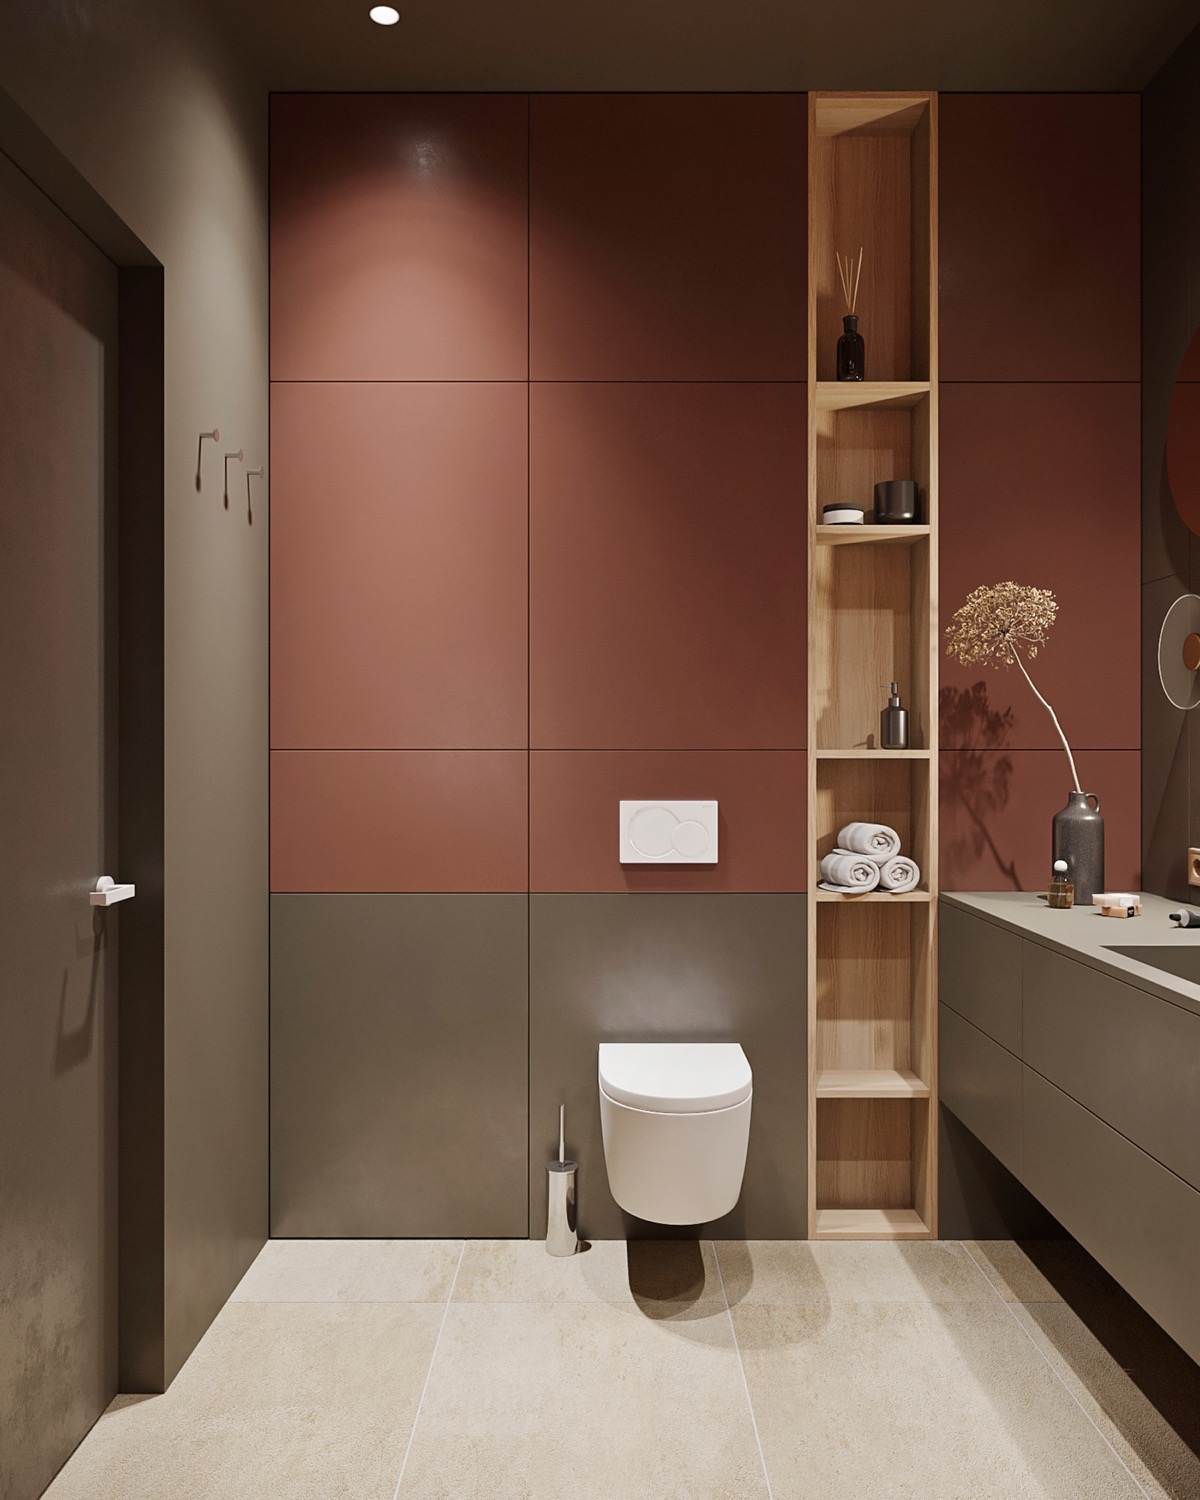 hình ảnh phòng tắm nhỏ đẹp, nổi bật với tường ốp gạch đỏ rượu vang, tháp gỗ lưu trữ